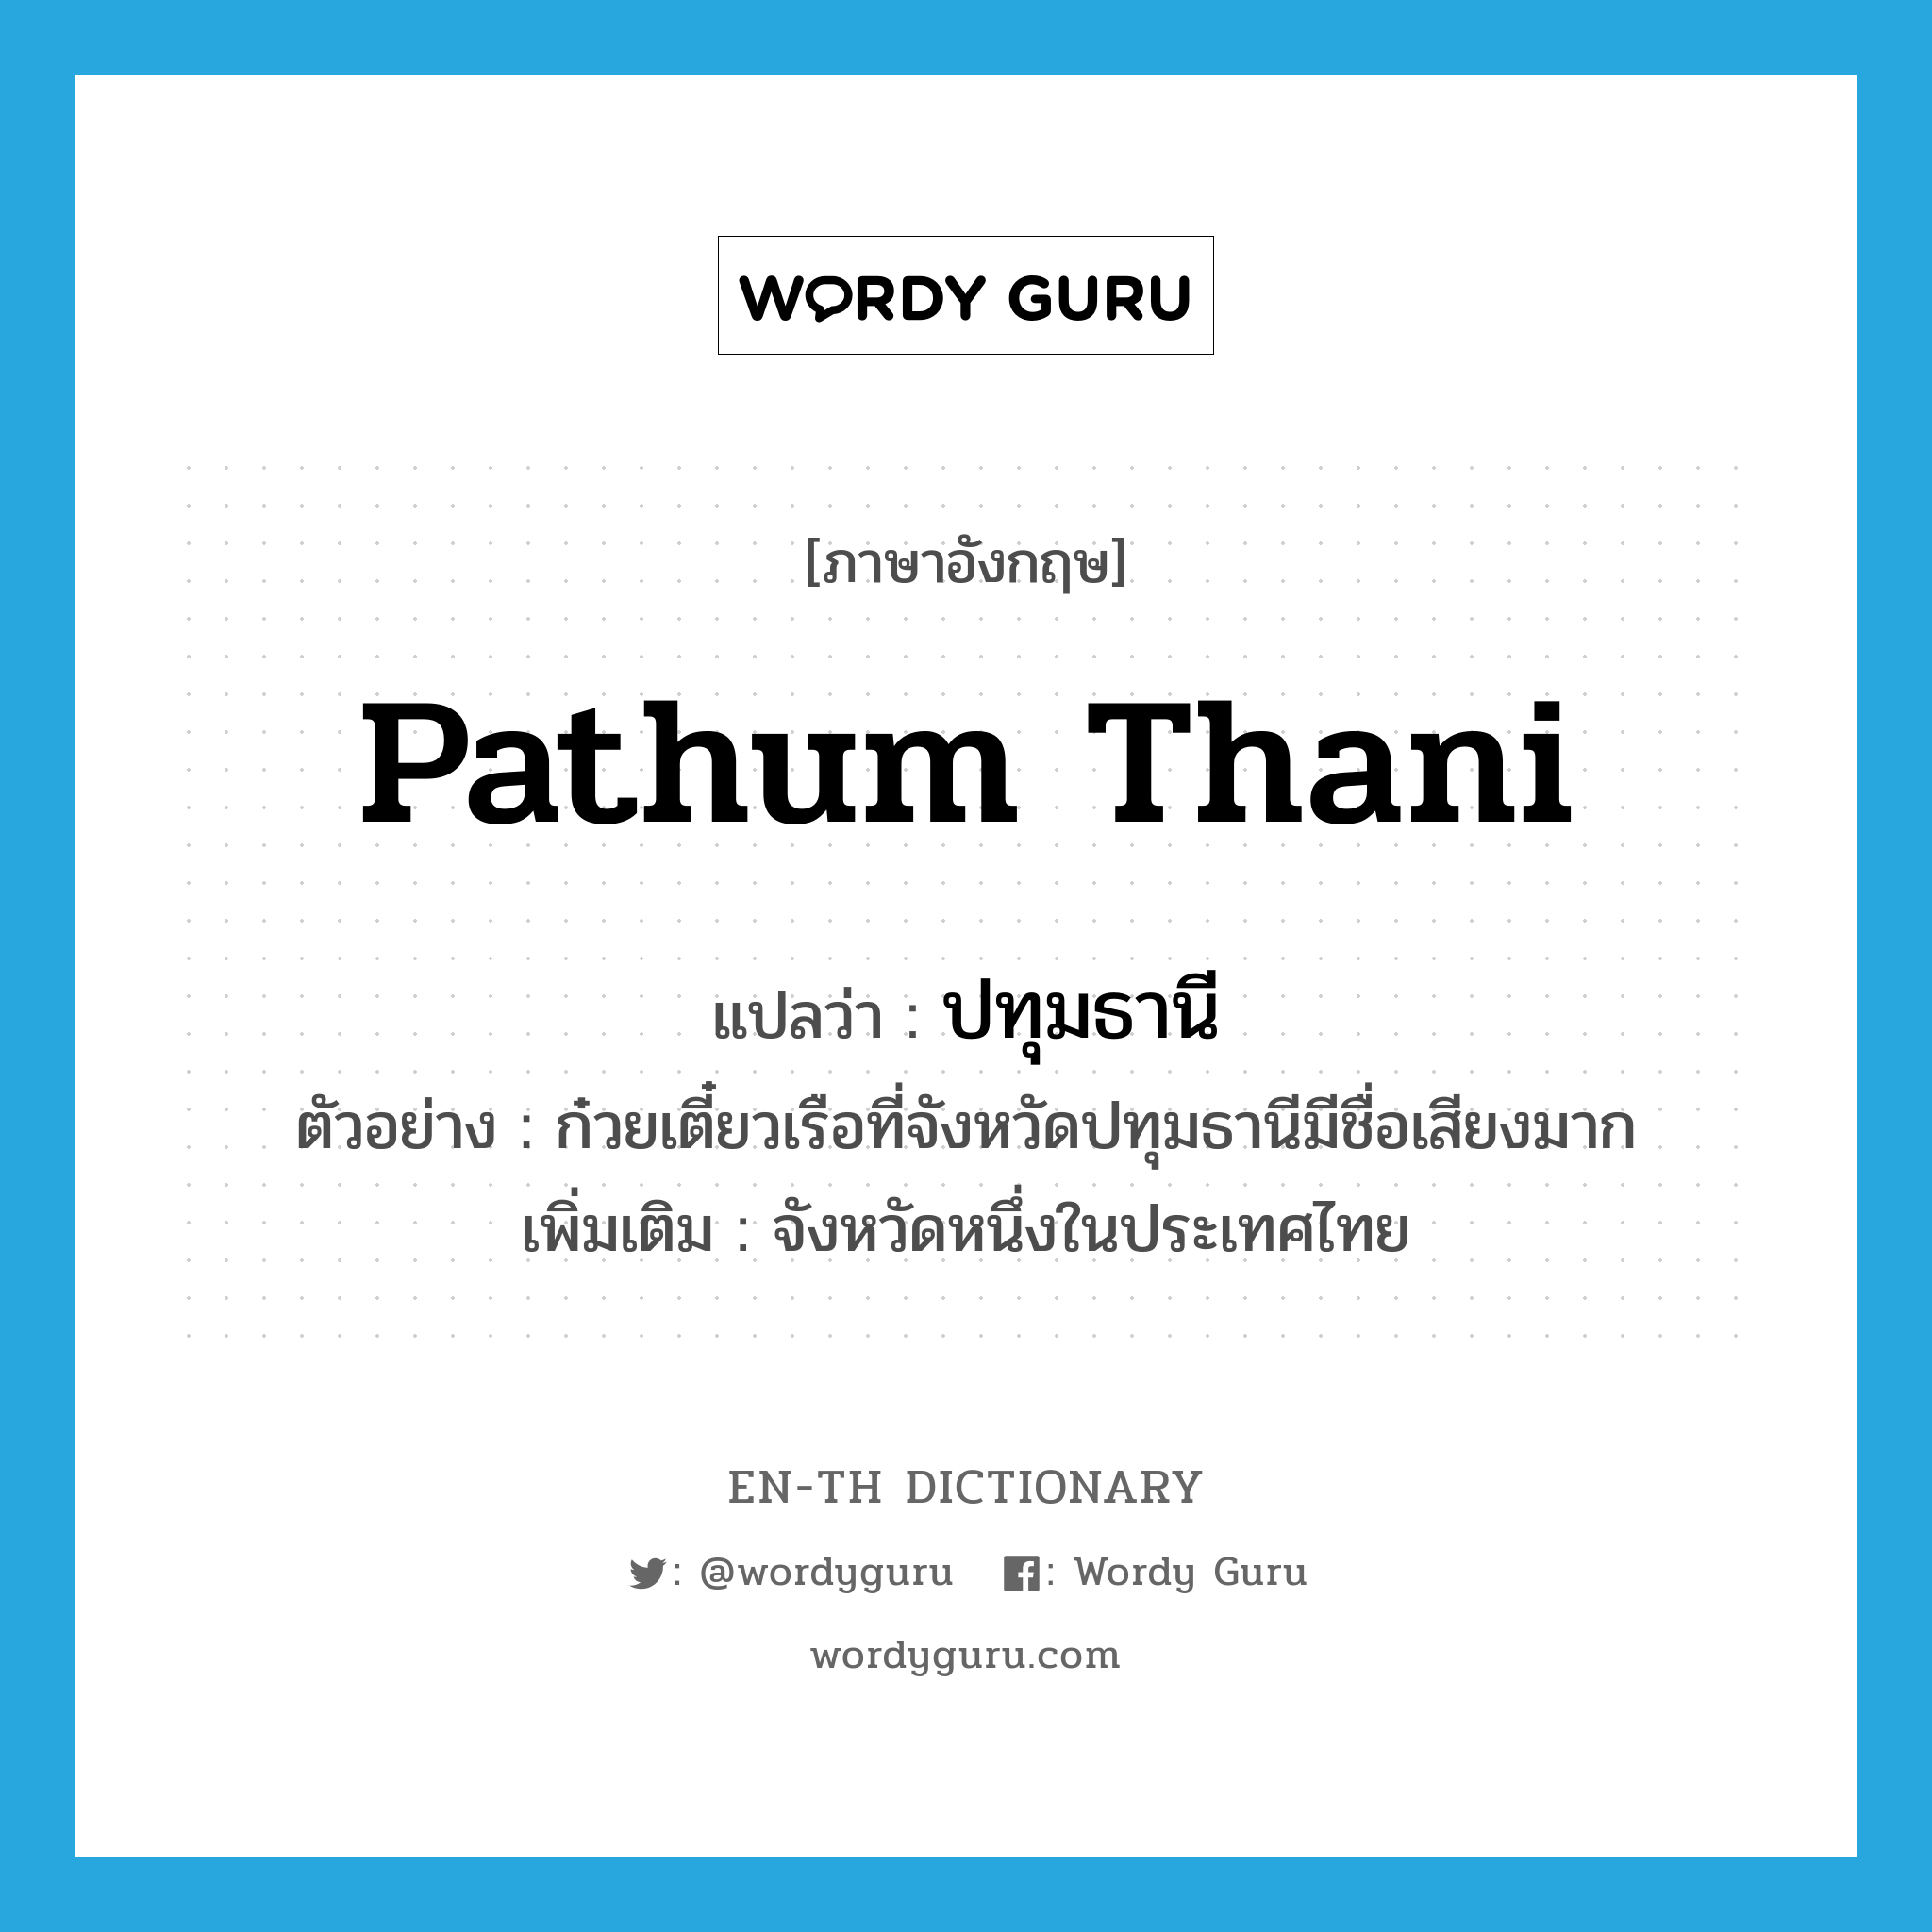 ปทุมธานี ภาษาอังกฤษ?, คำศัพท์ภาษาอังกฤษ ปทุมธานี แปลว่า Pathum Thani ประเภท N ตัวอย่าง ก๋วยเตี๋ยวเรือที่จังหวัดปทุมธานีมีชื่อเสียงมาก เพิ่มเติม จังหวัดหนึ่งในประเทศไทย หมวด N